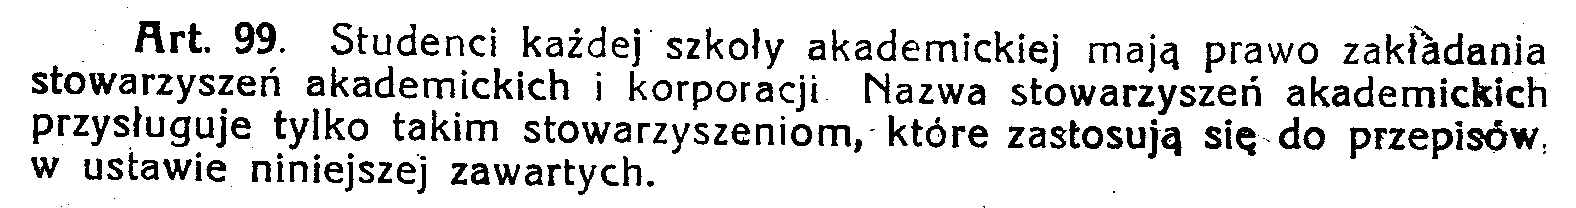 Statuty AZS-ów nie były one zunifikowane, w praktyce były do siebie podobne, bo większość z nich wzorowała się rozwiązaniach krakowskiego AZS.